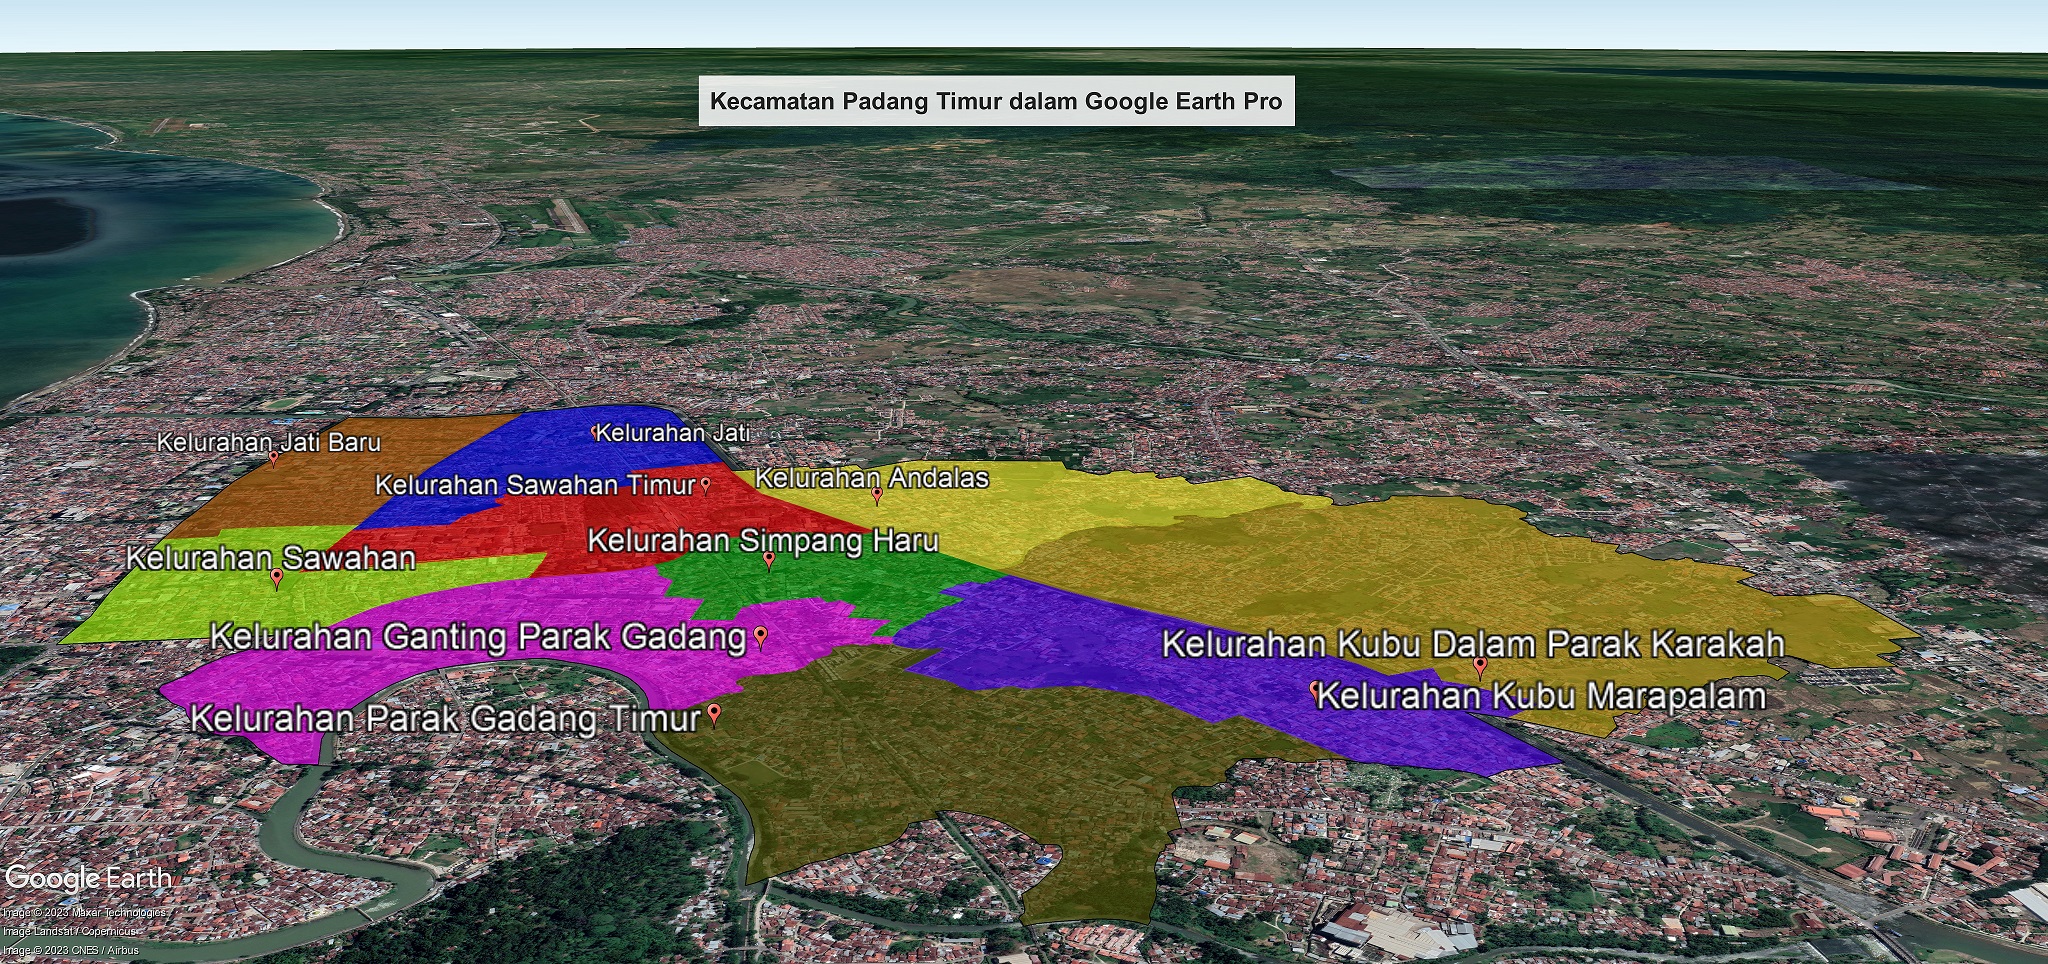 PADATI GOPRO Padang Timur dalam Google Earth Pro